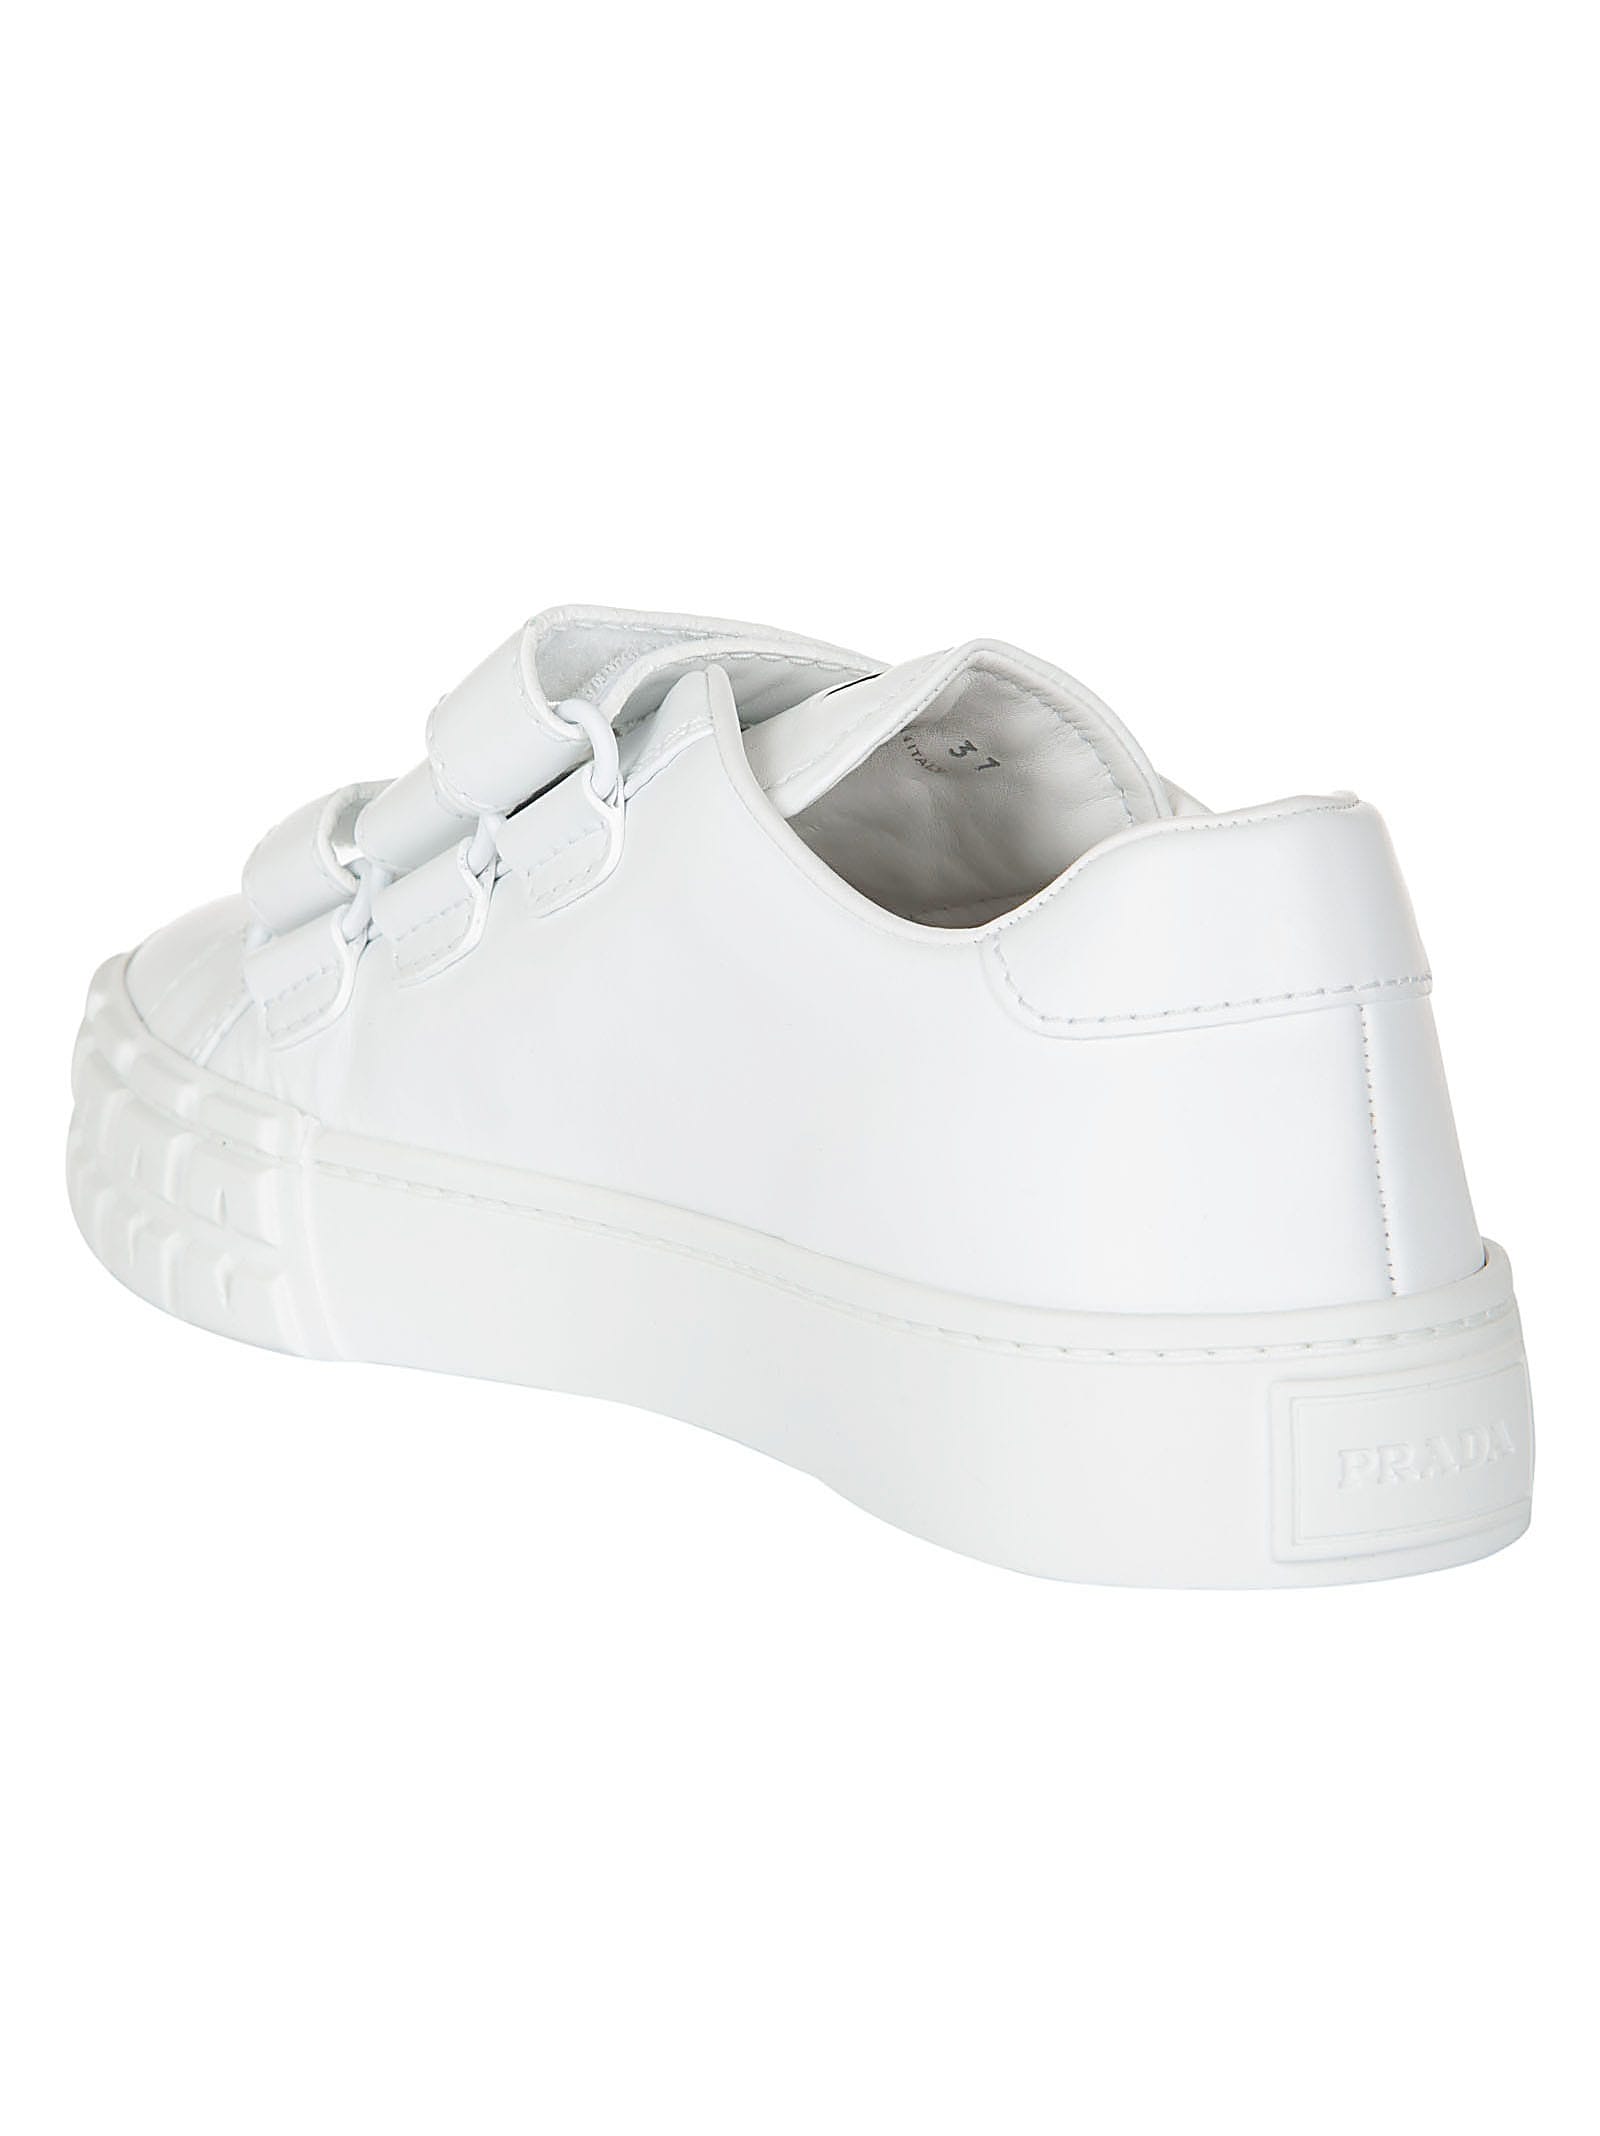 Prada Prada Strappy Sneakers - Bianco 